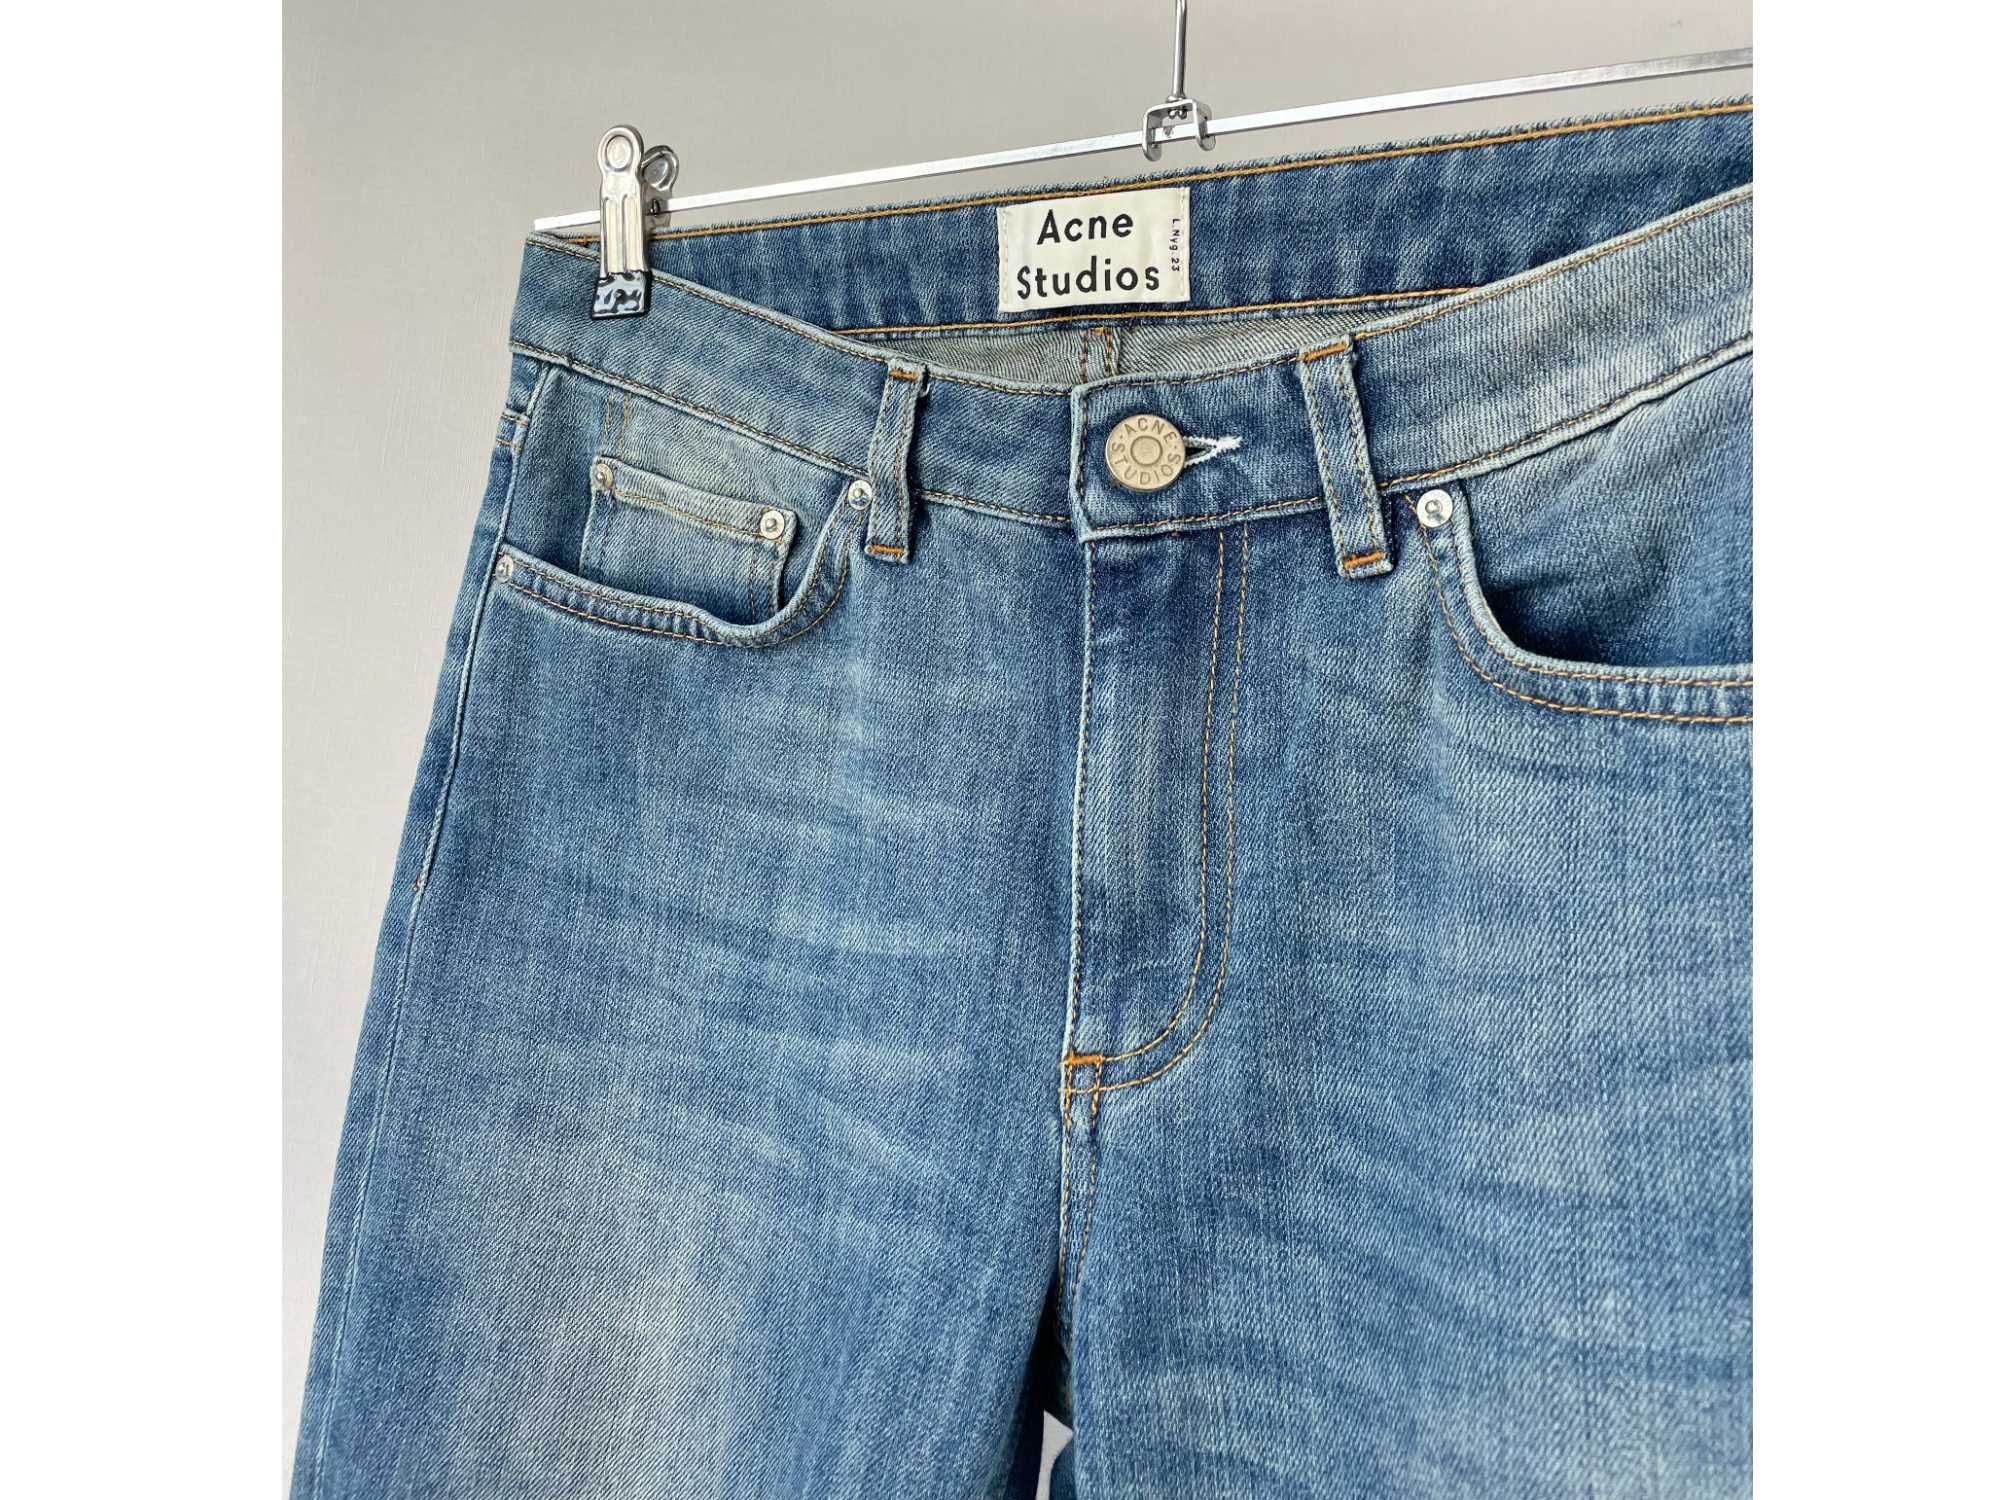 ХС Джинси Acne Studios джинсы оригинал скини на высокой посадке